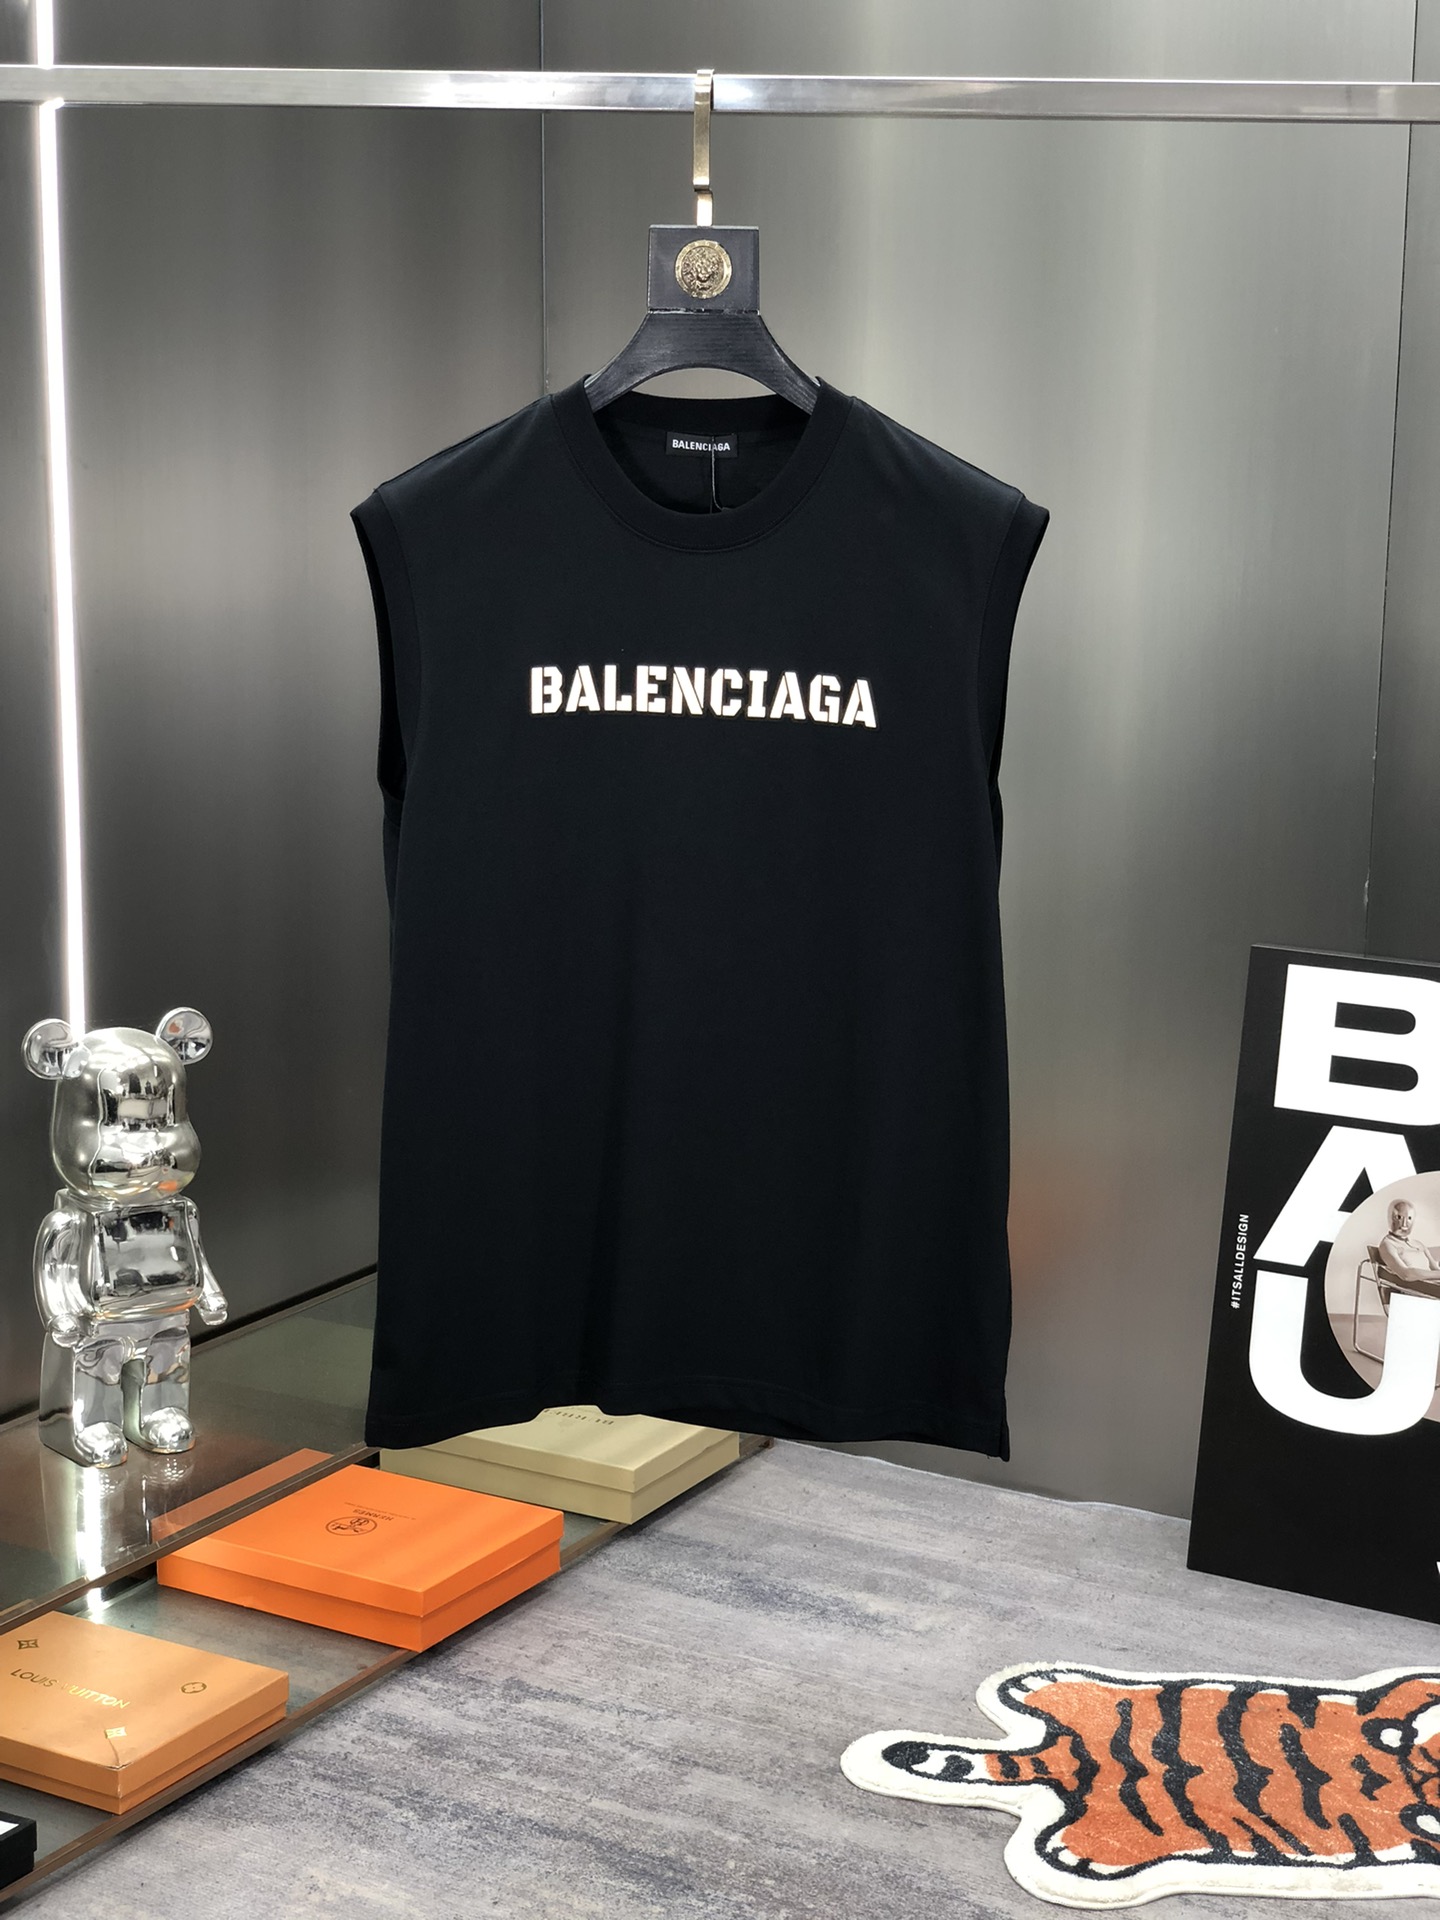 Balenciaga Clothing Tank Tops&Camis Waistcoats AAA Replica
 Unisex Cotton Summer Collection